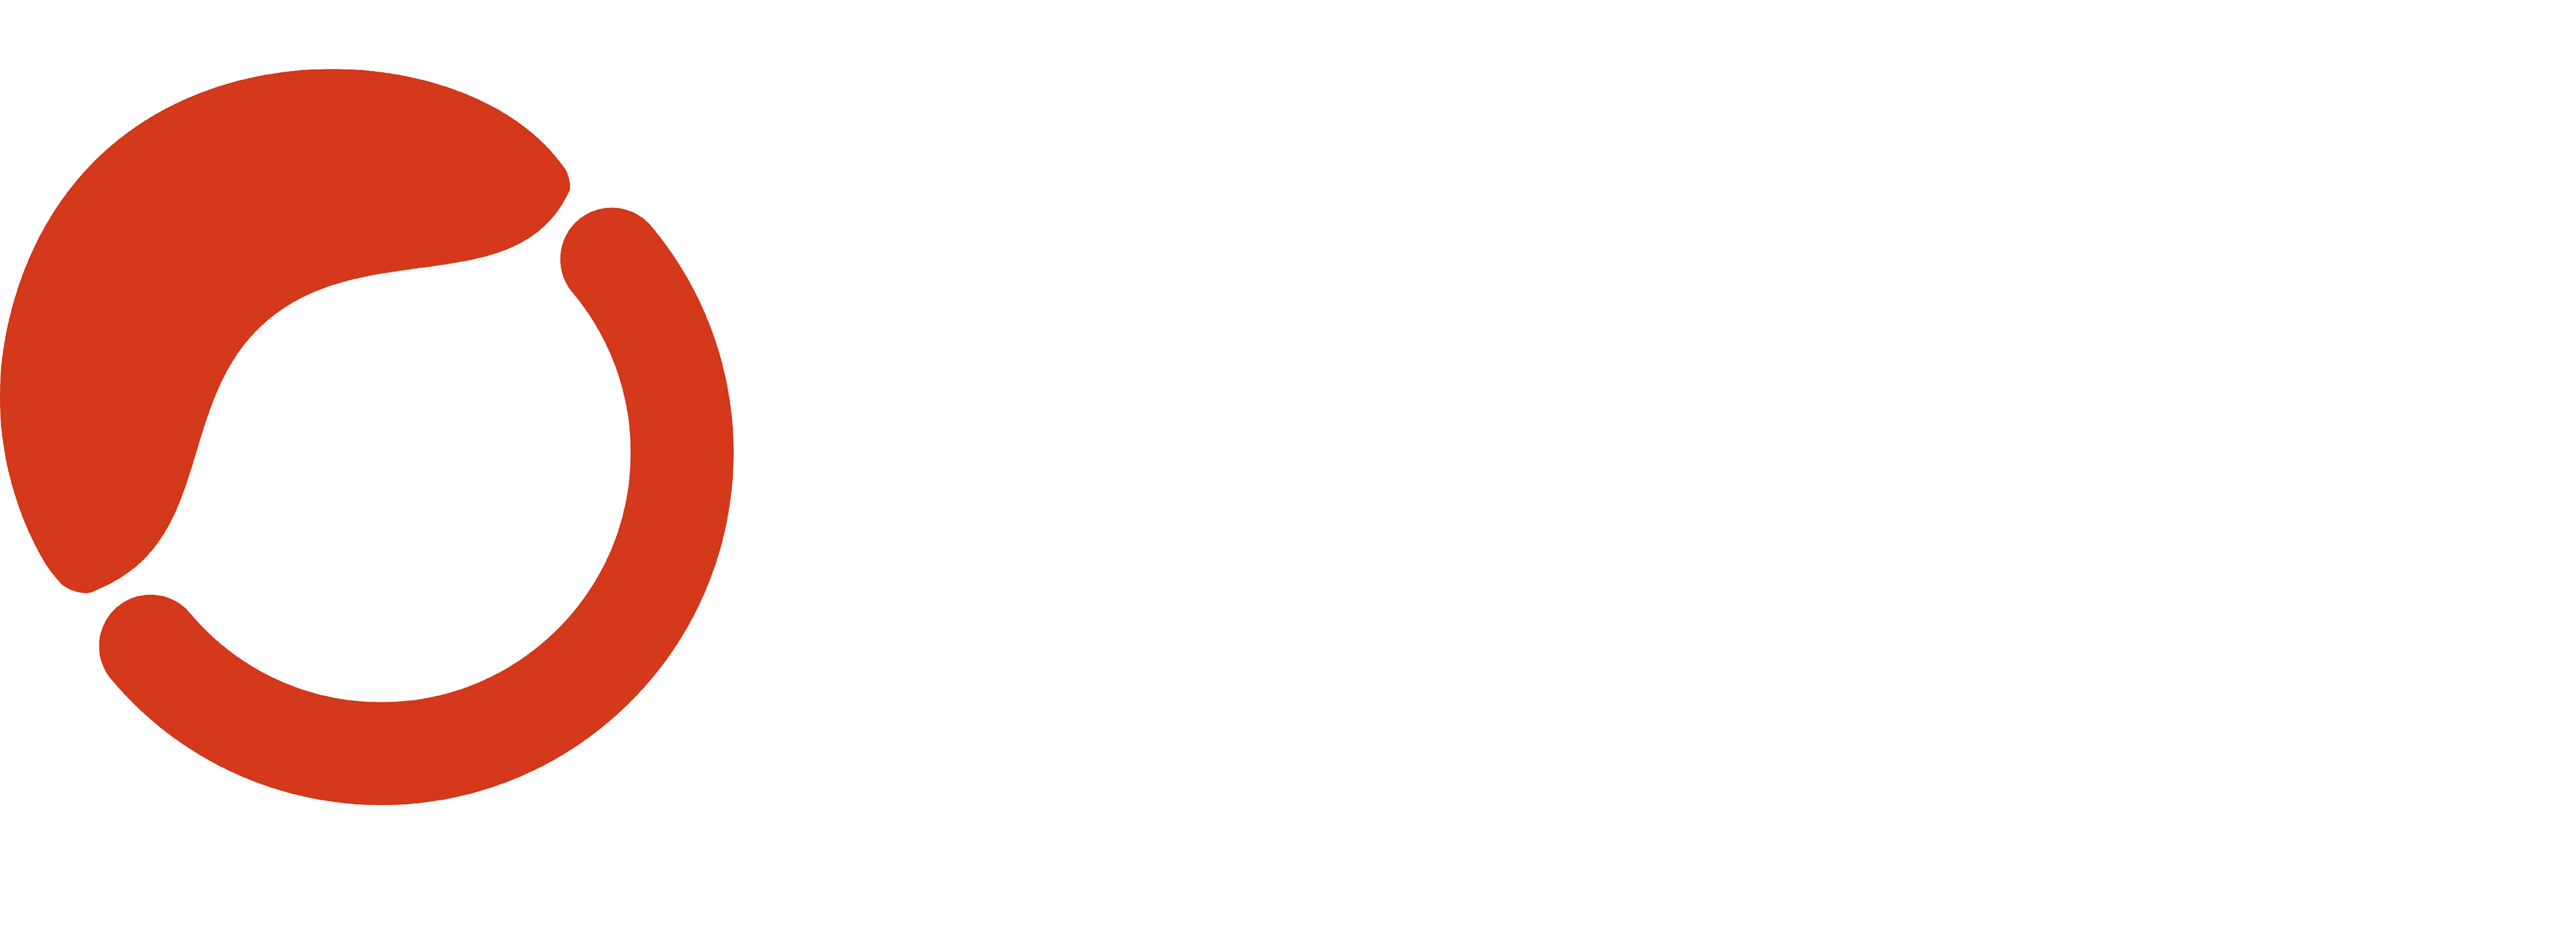 CHLEO STUDIOS